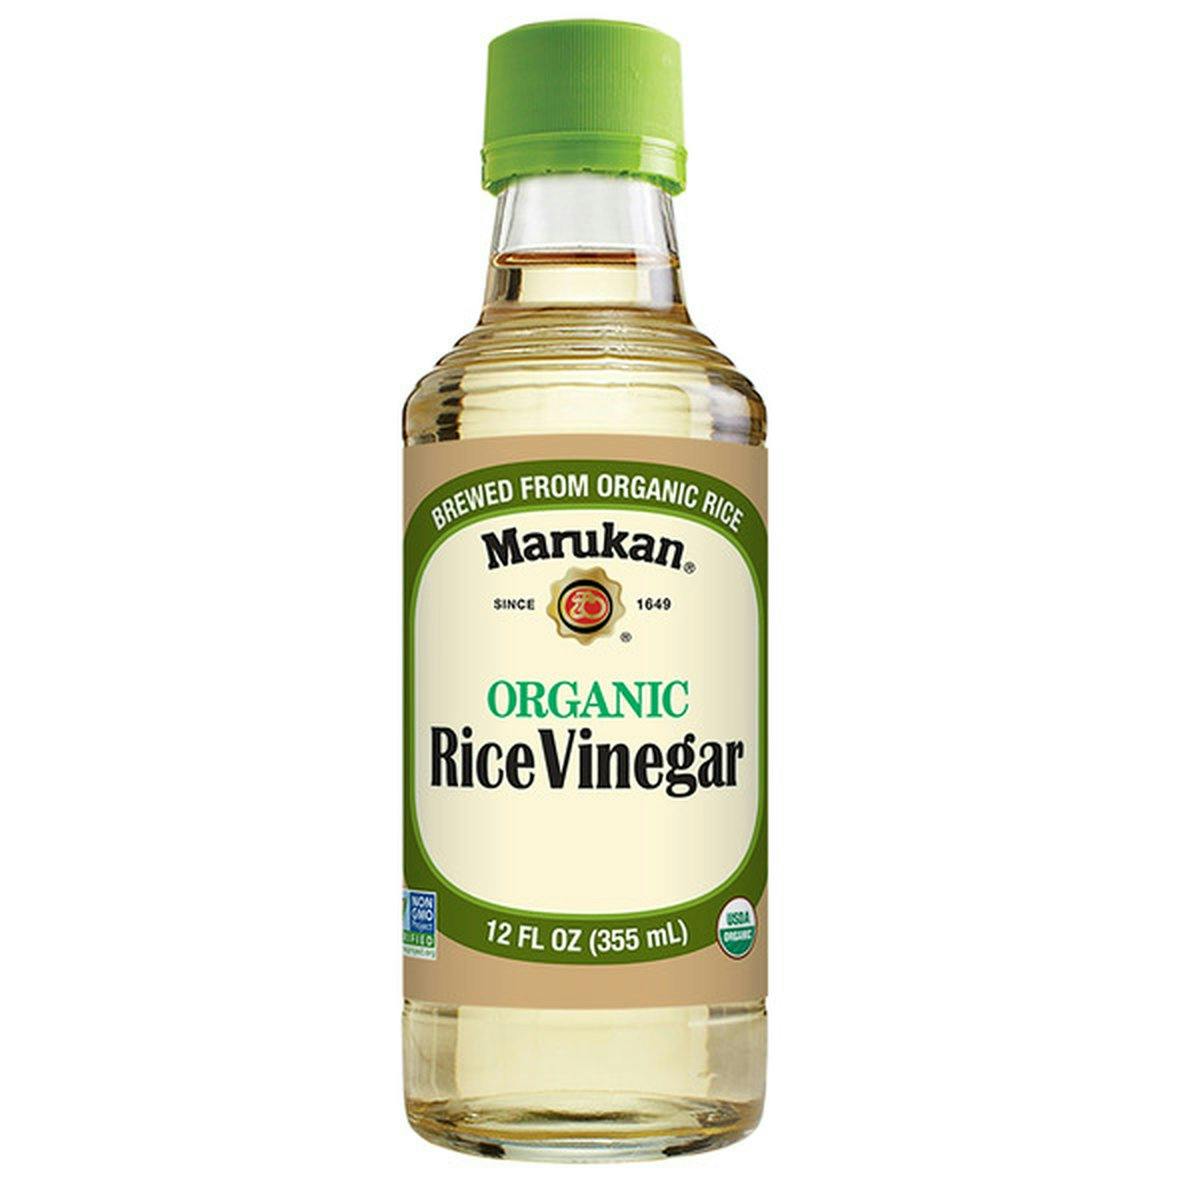 rice vinegar to taste